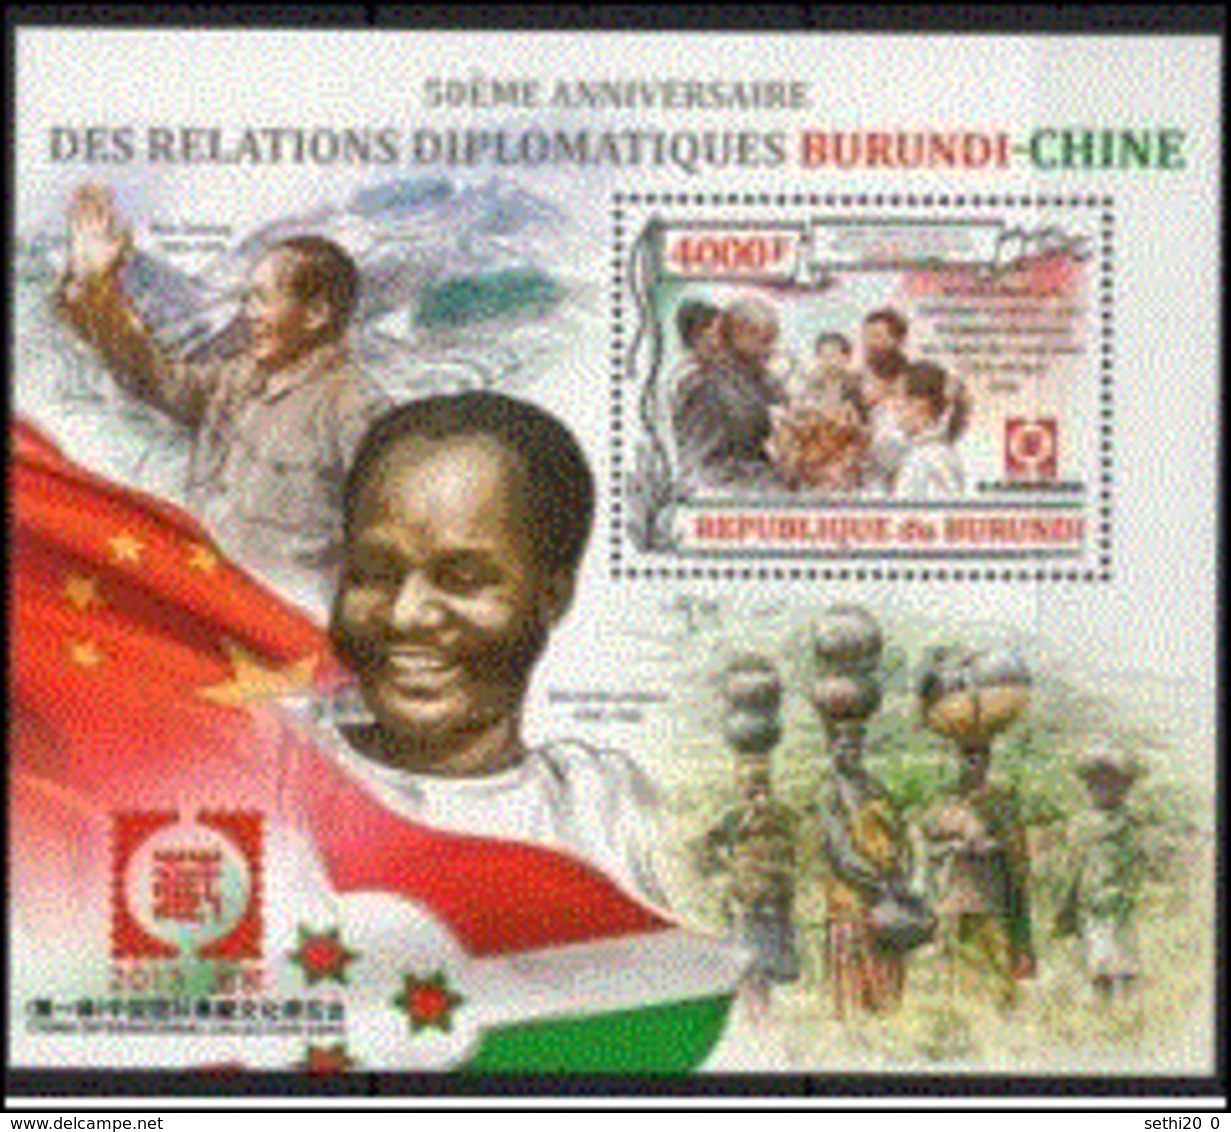 Burundi 2013 Relations Burundi Chine Mao Tse Tung MNH - Mao Tse-Tung